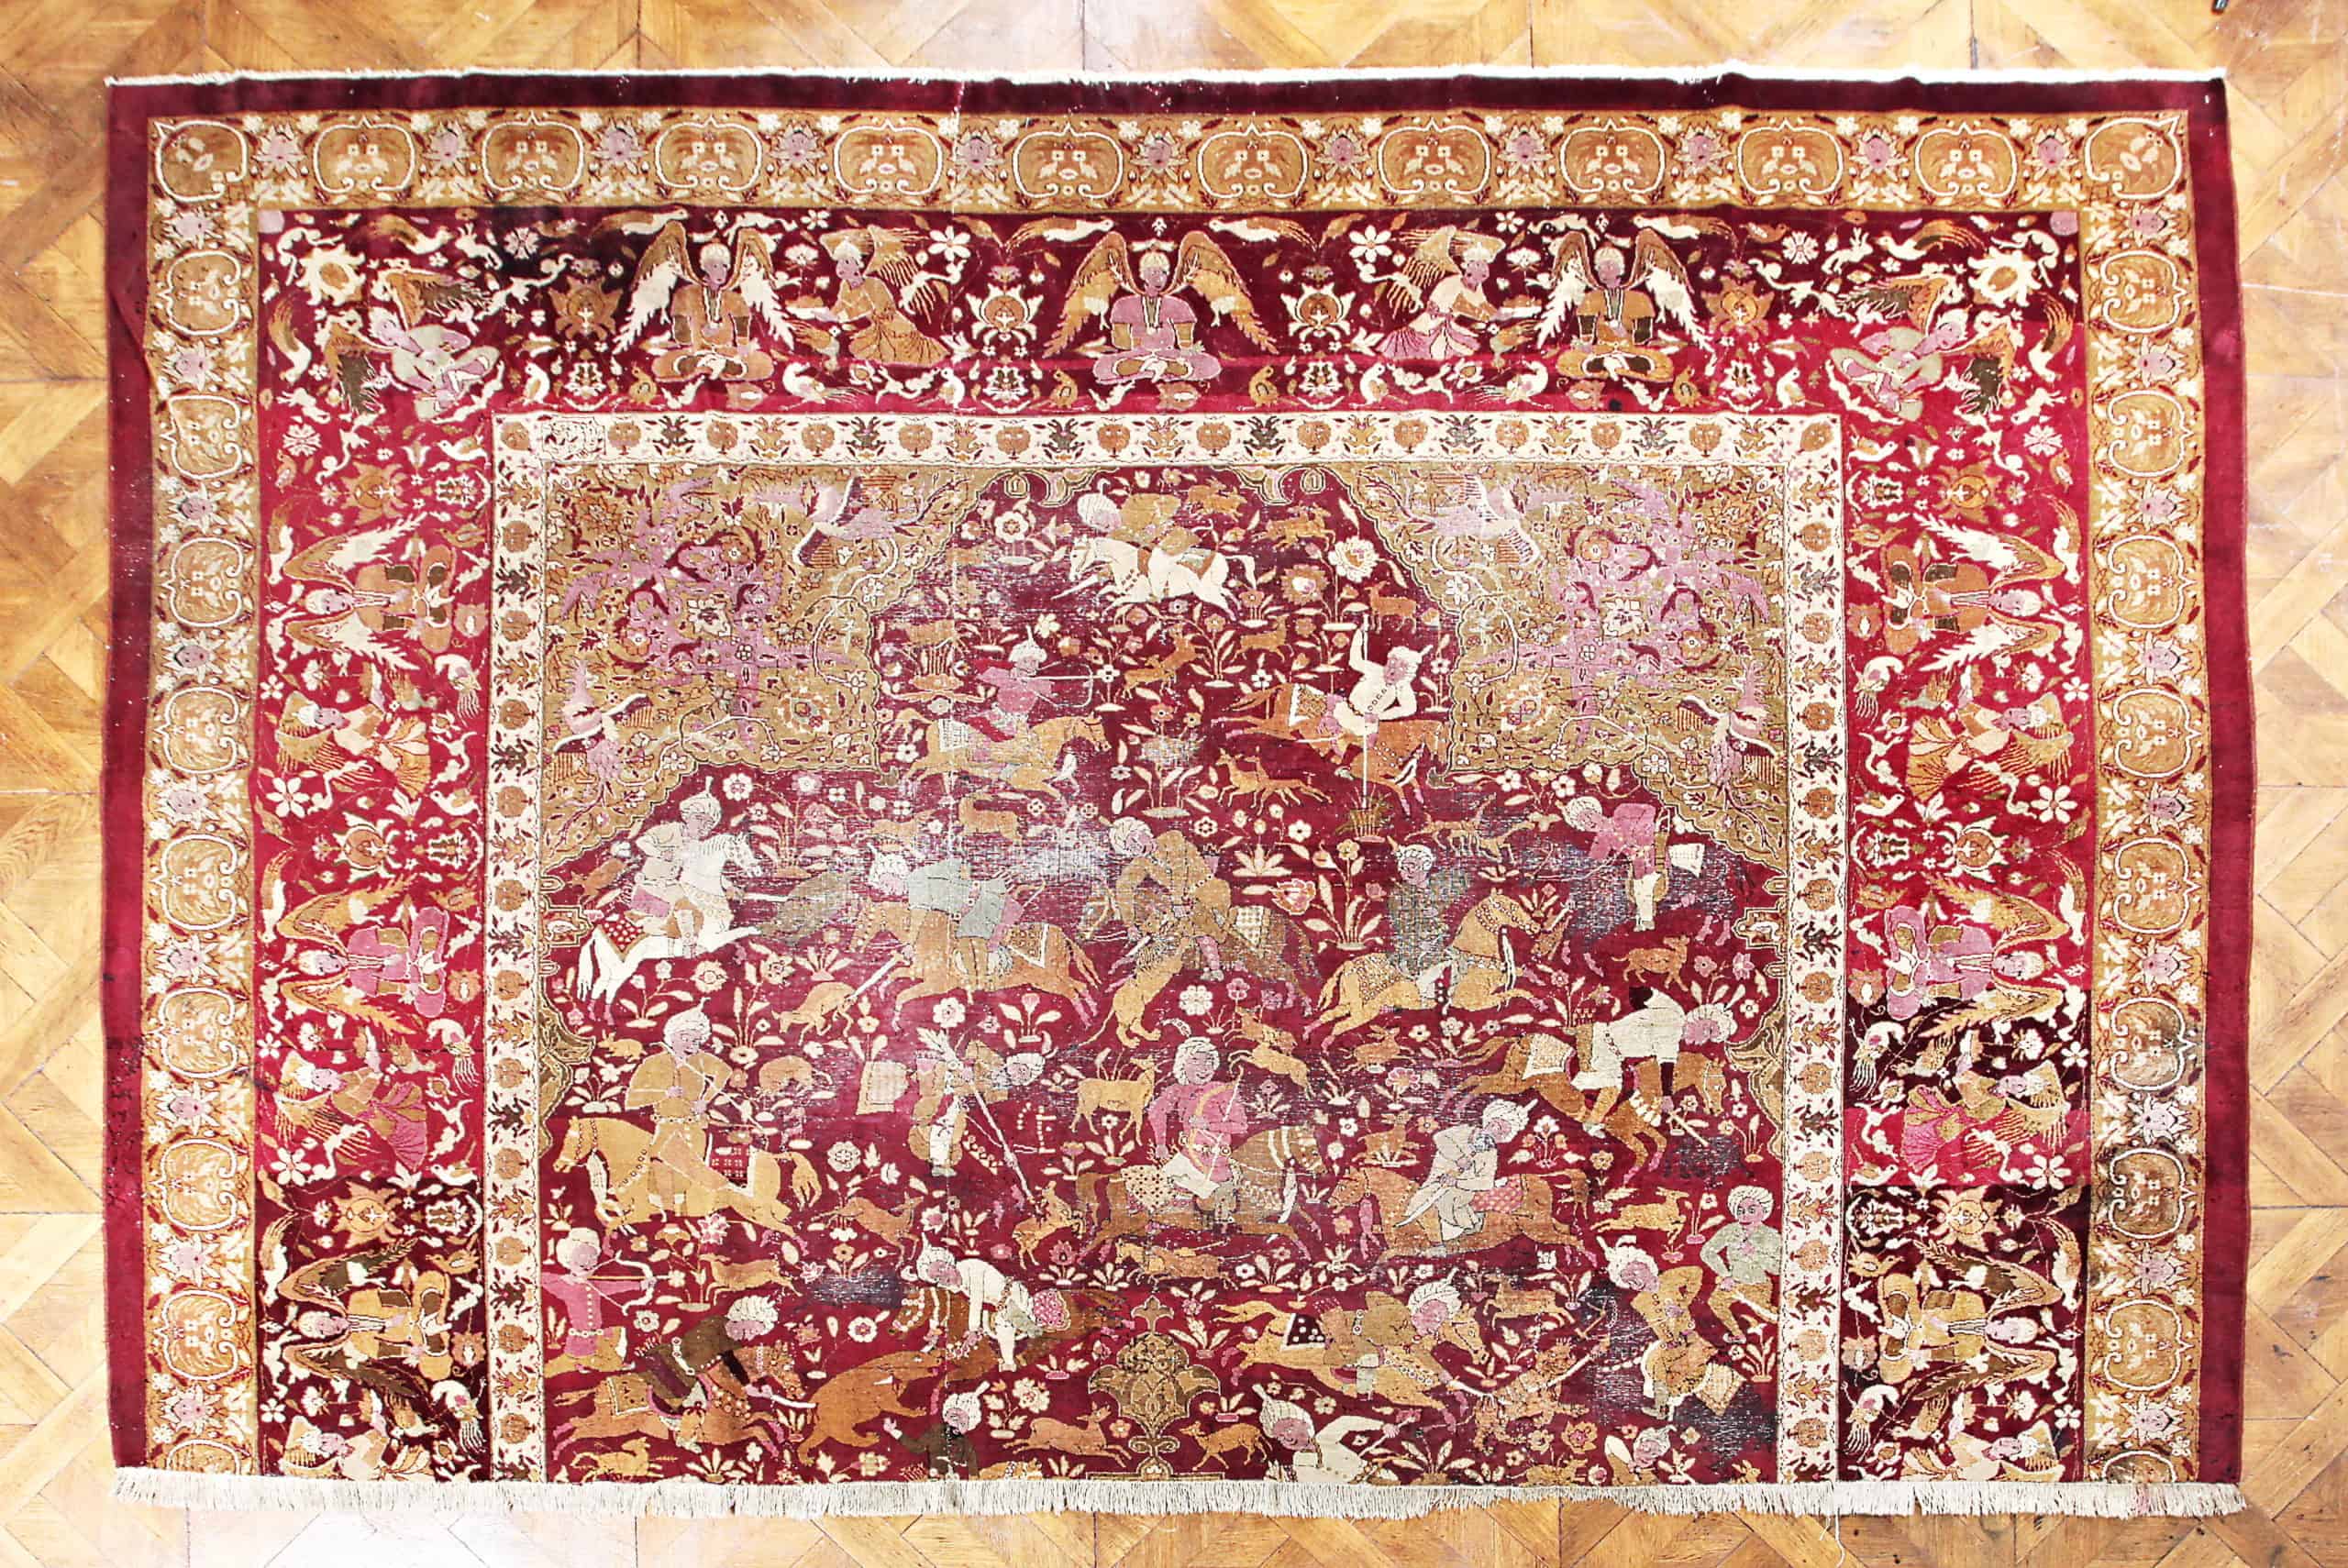 Sběratelský starožitný koberec Tabriz z 18. století